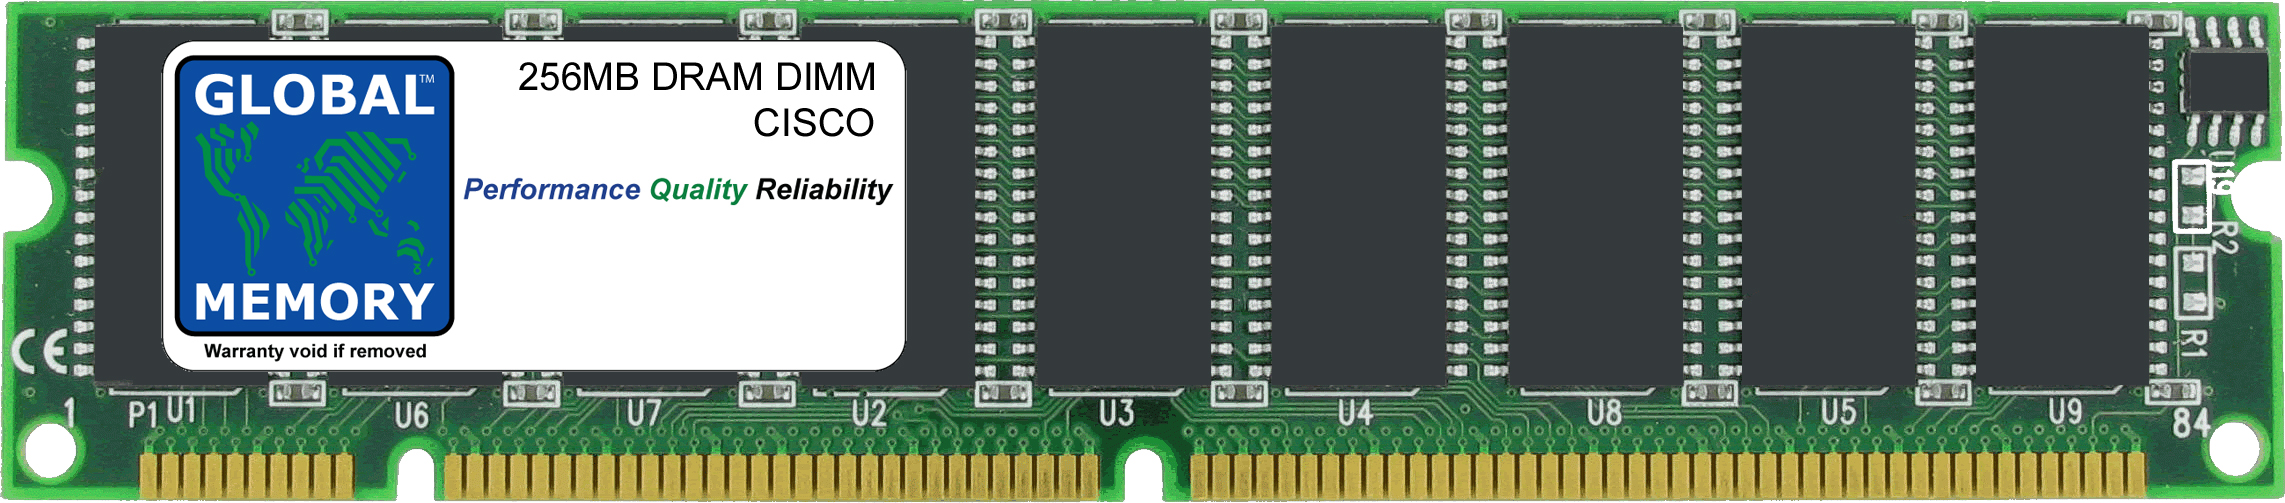 256MB DRAM DIMM MEMORY RAM FOR CISCO MEDIA CONVERGENCE SERVER MCS-7820 / MCS-7822 (MEM-782X-256-100)